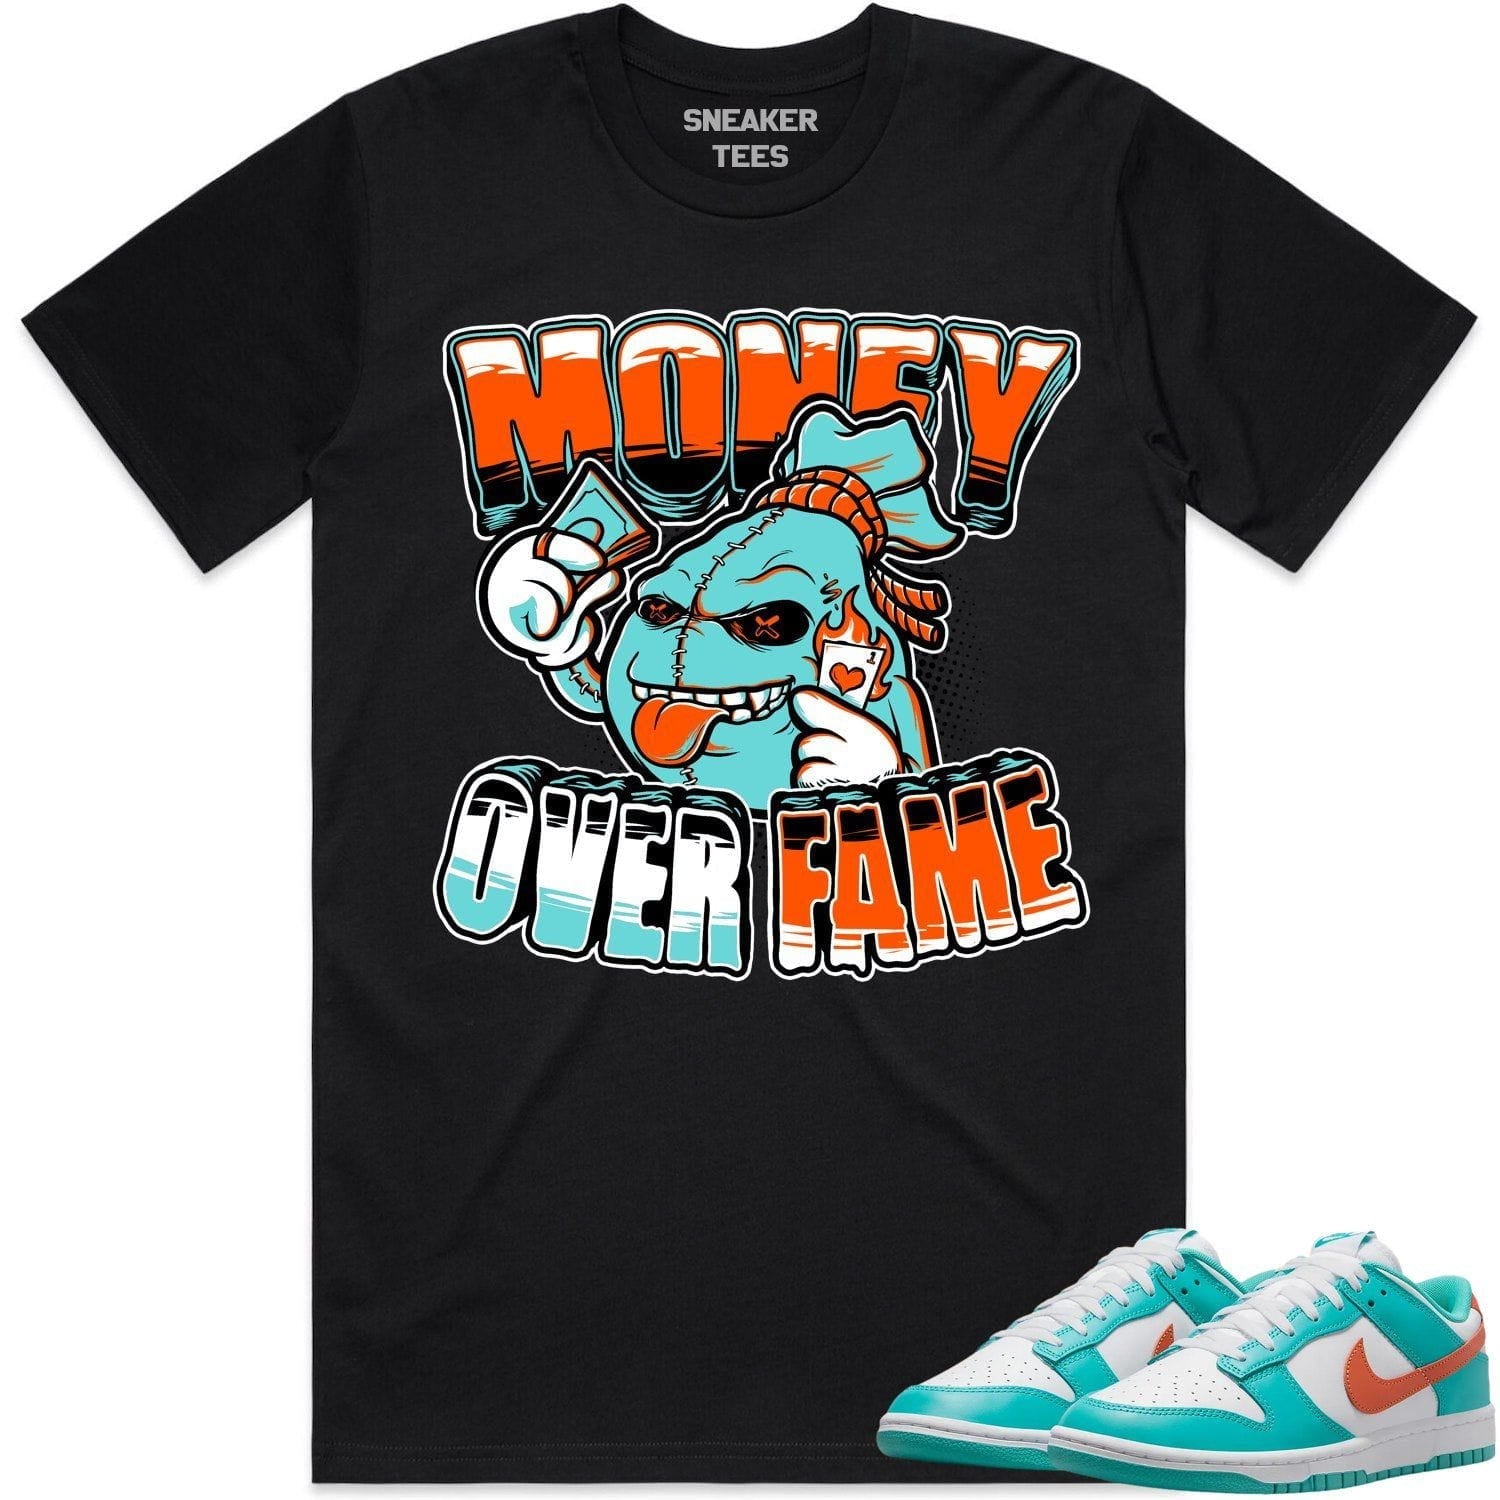 Miami Dunks Shirt - Miami Dunks Sneaker Tees - Miami Money Over Fame